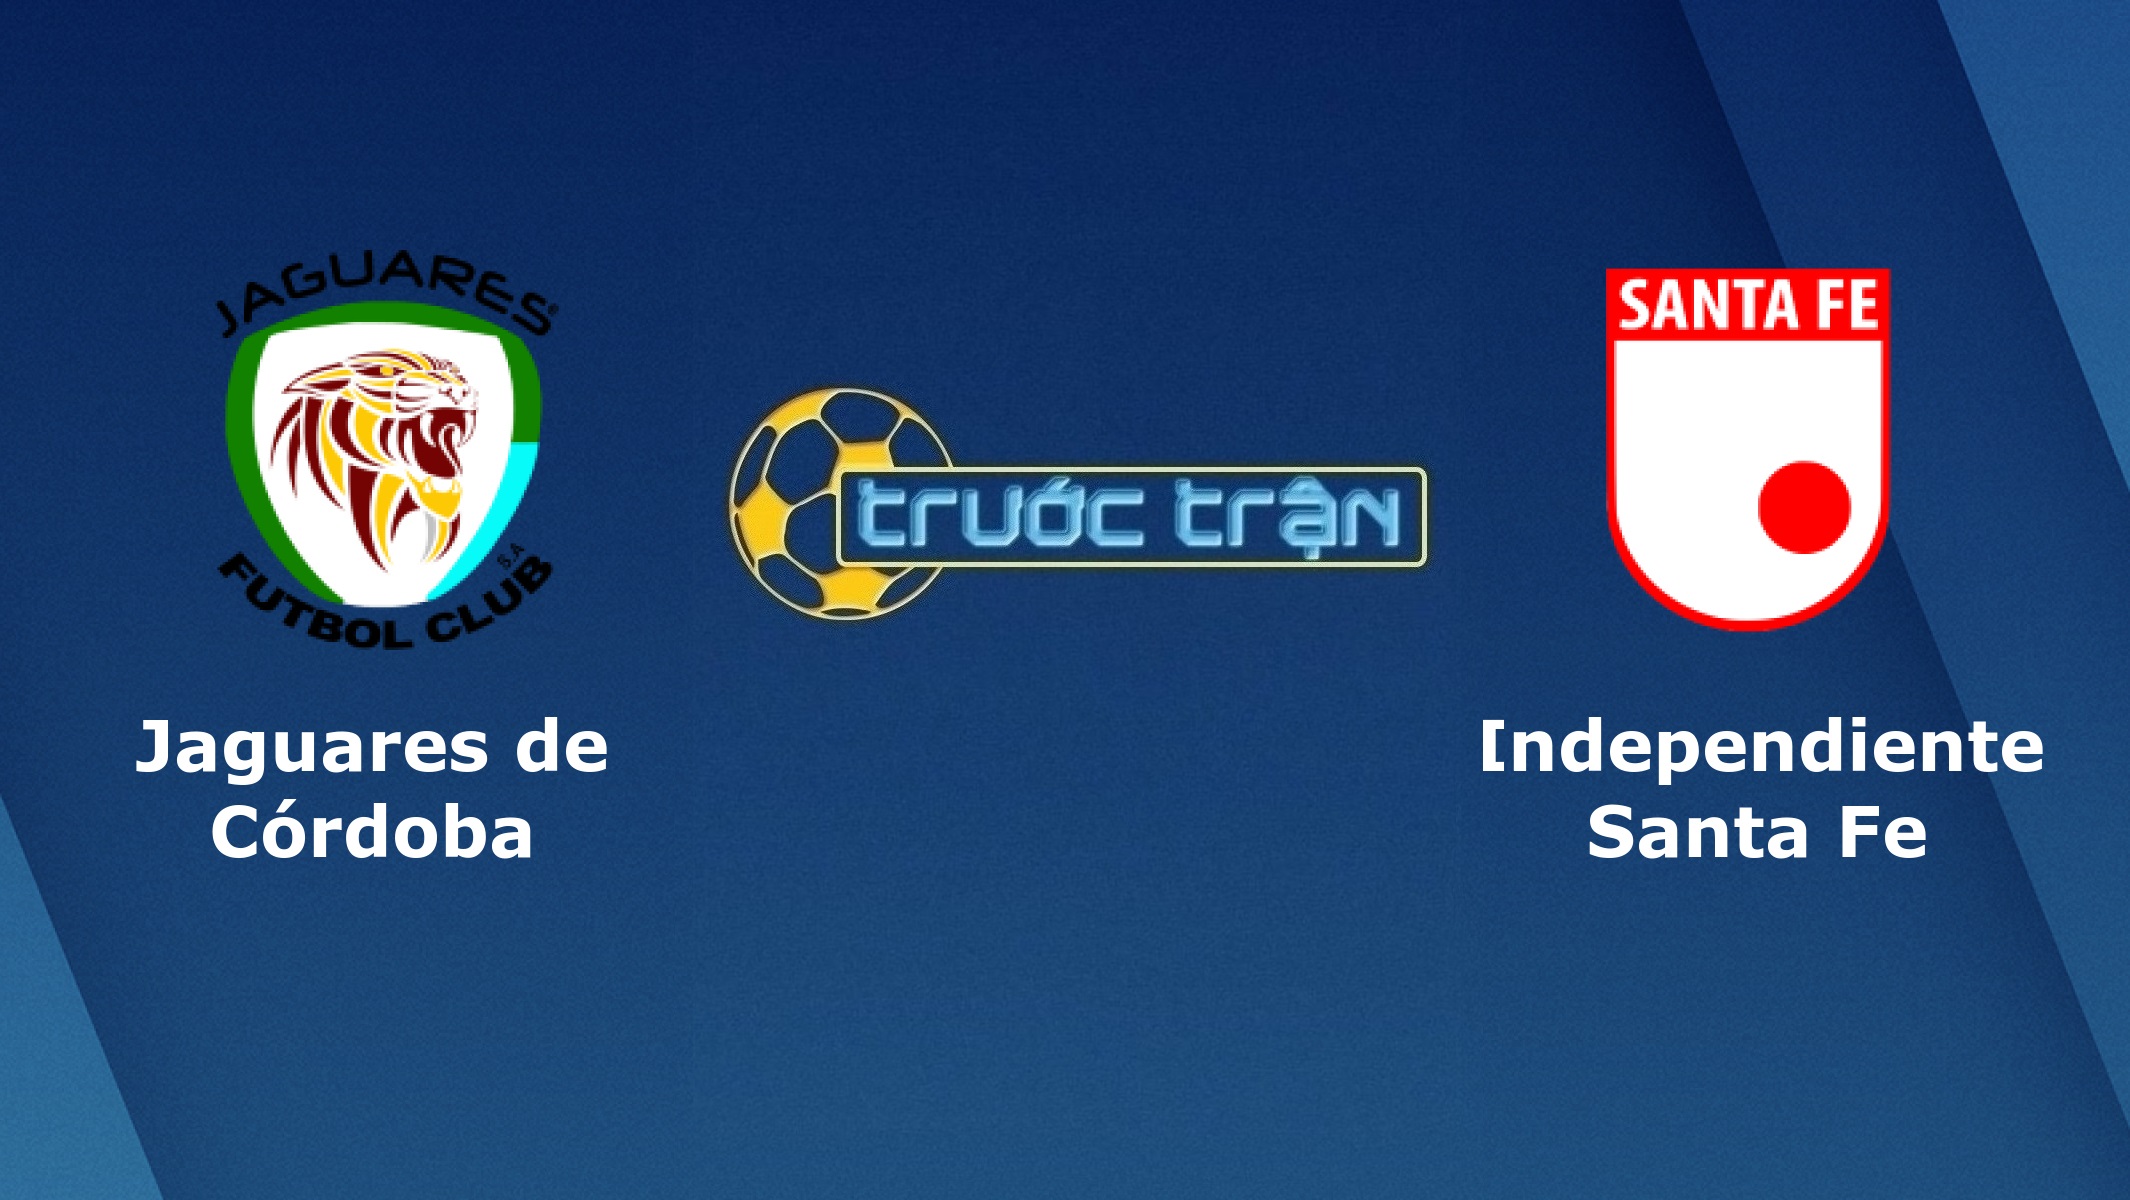 Jaguares de Cordoba vs Independiente Santa Fe – Tip kèo bóng đá hôm nay – 13/10